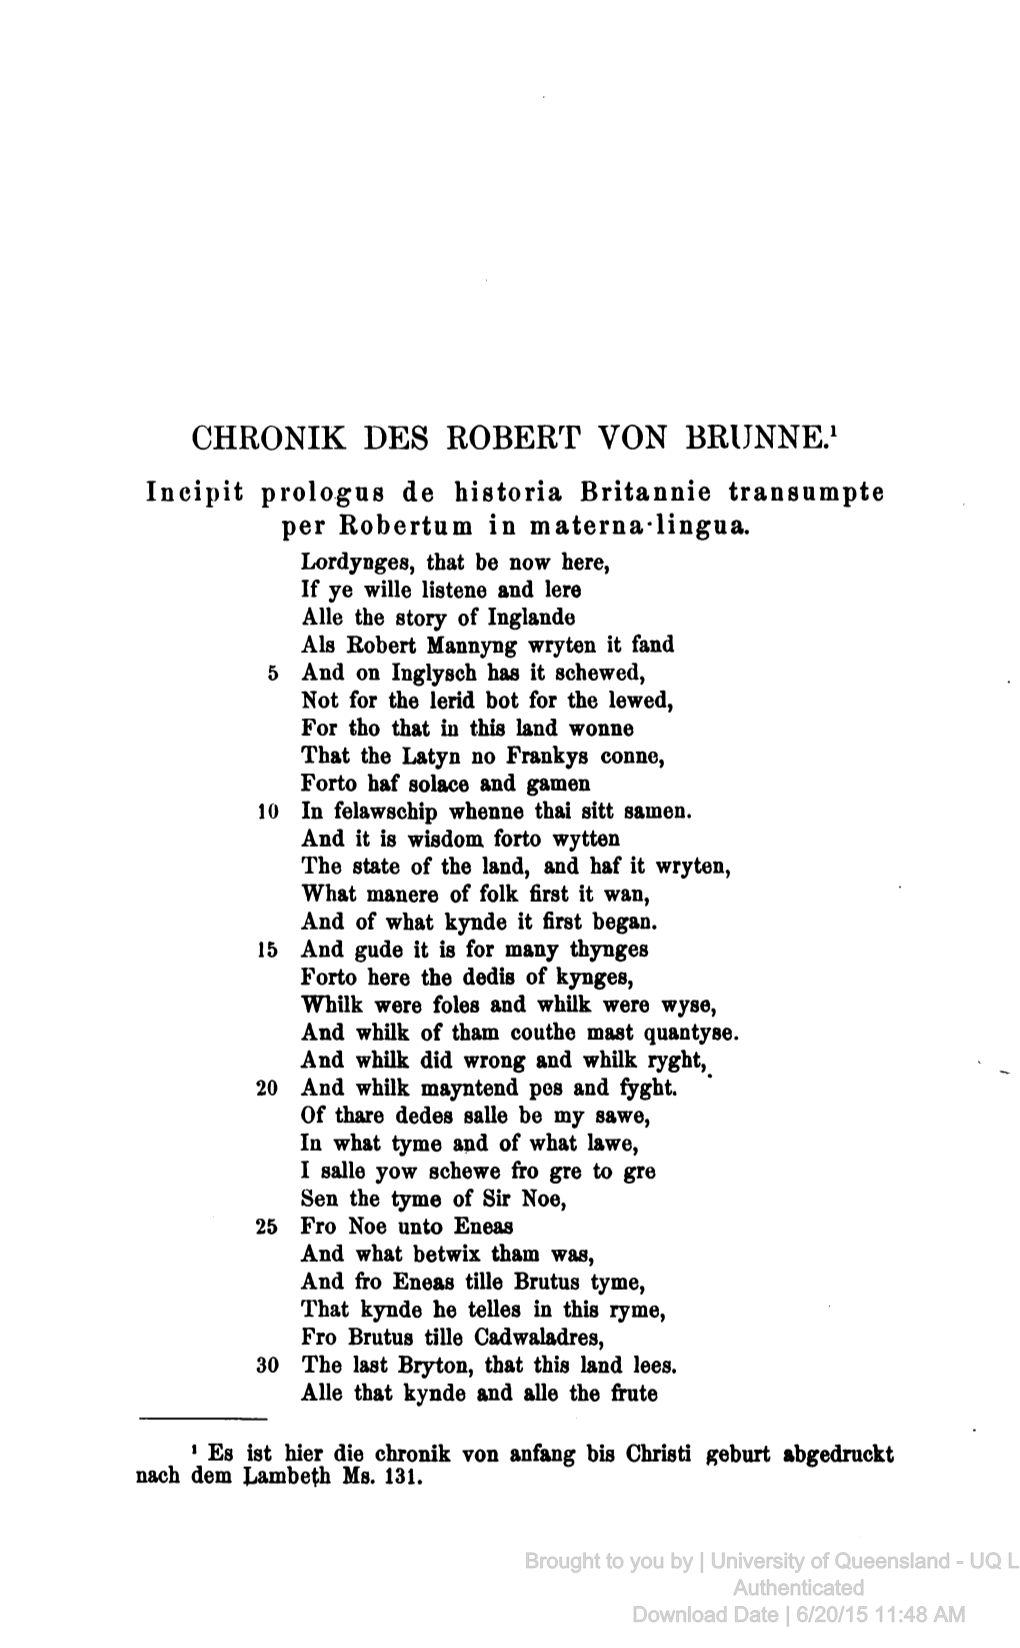 CHRONIK DES ROBERT VON BRUNNE.1 Incipit Prologue De Historia Britannie Transumpte Per Robertum in Materna-Lingua